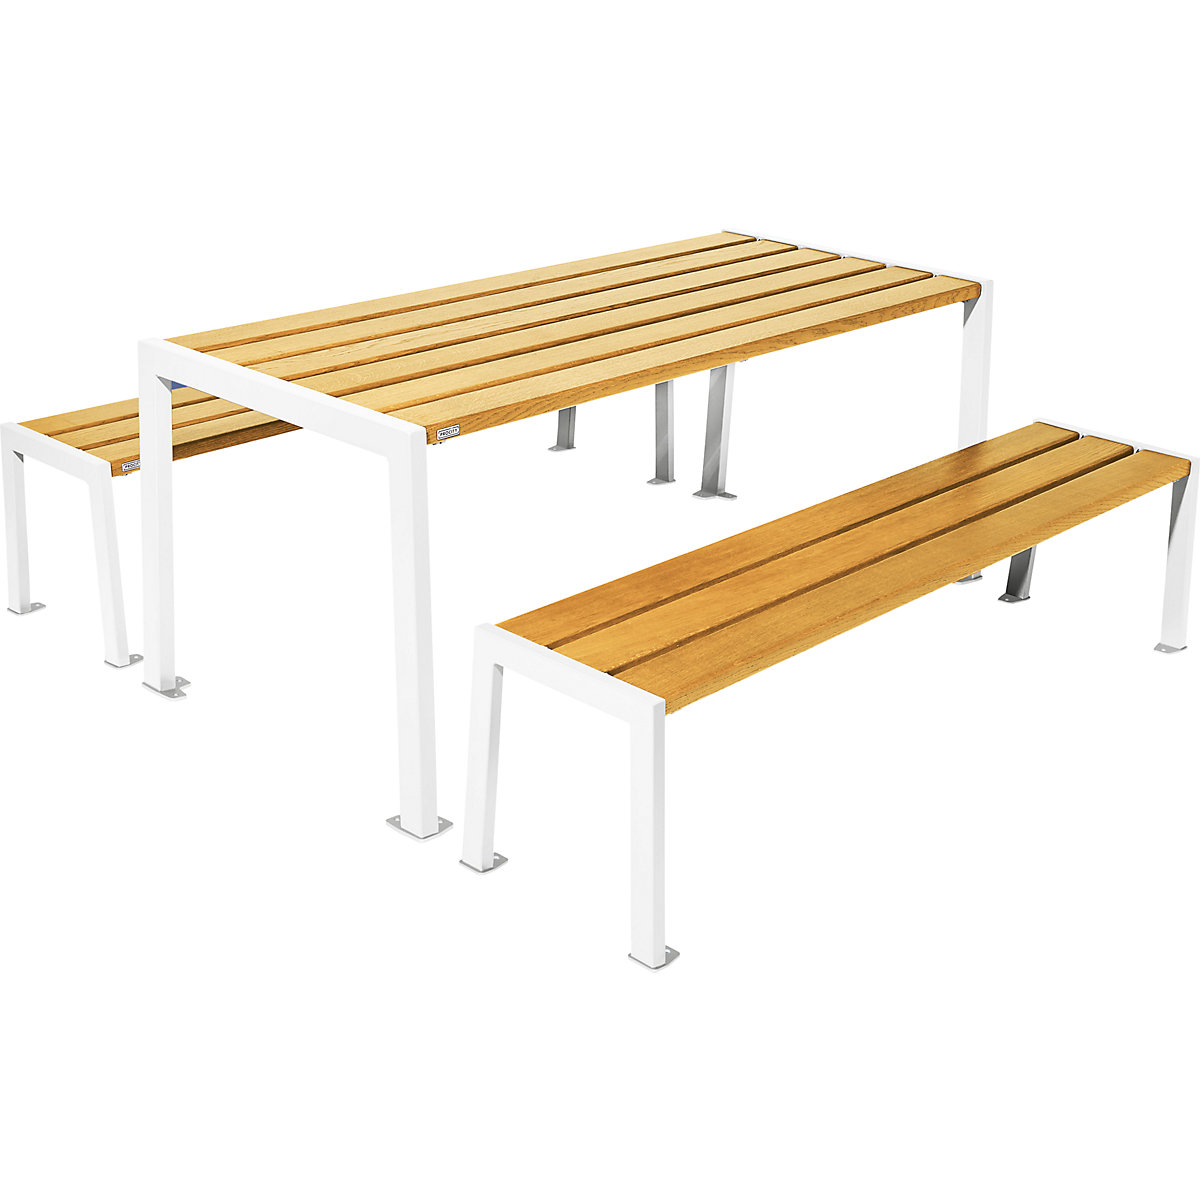 Garnitura mize in klopi Silaos® – PROCITY, dolžina 1800 mm, bele barve / svetli hrast-2